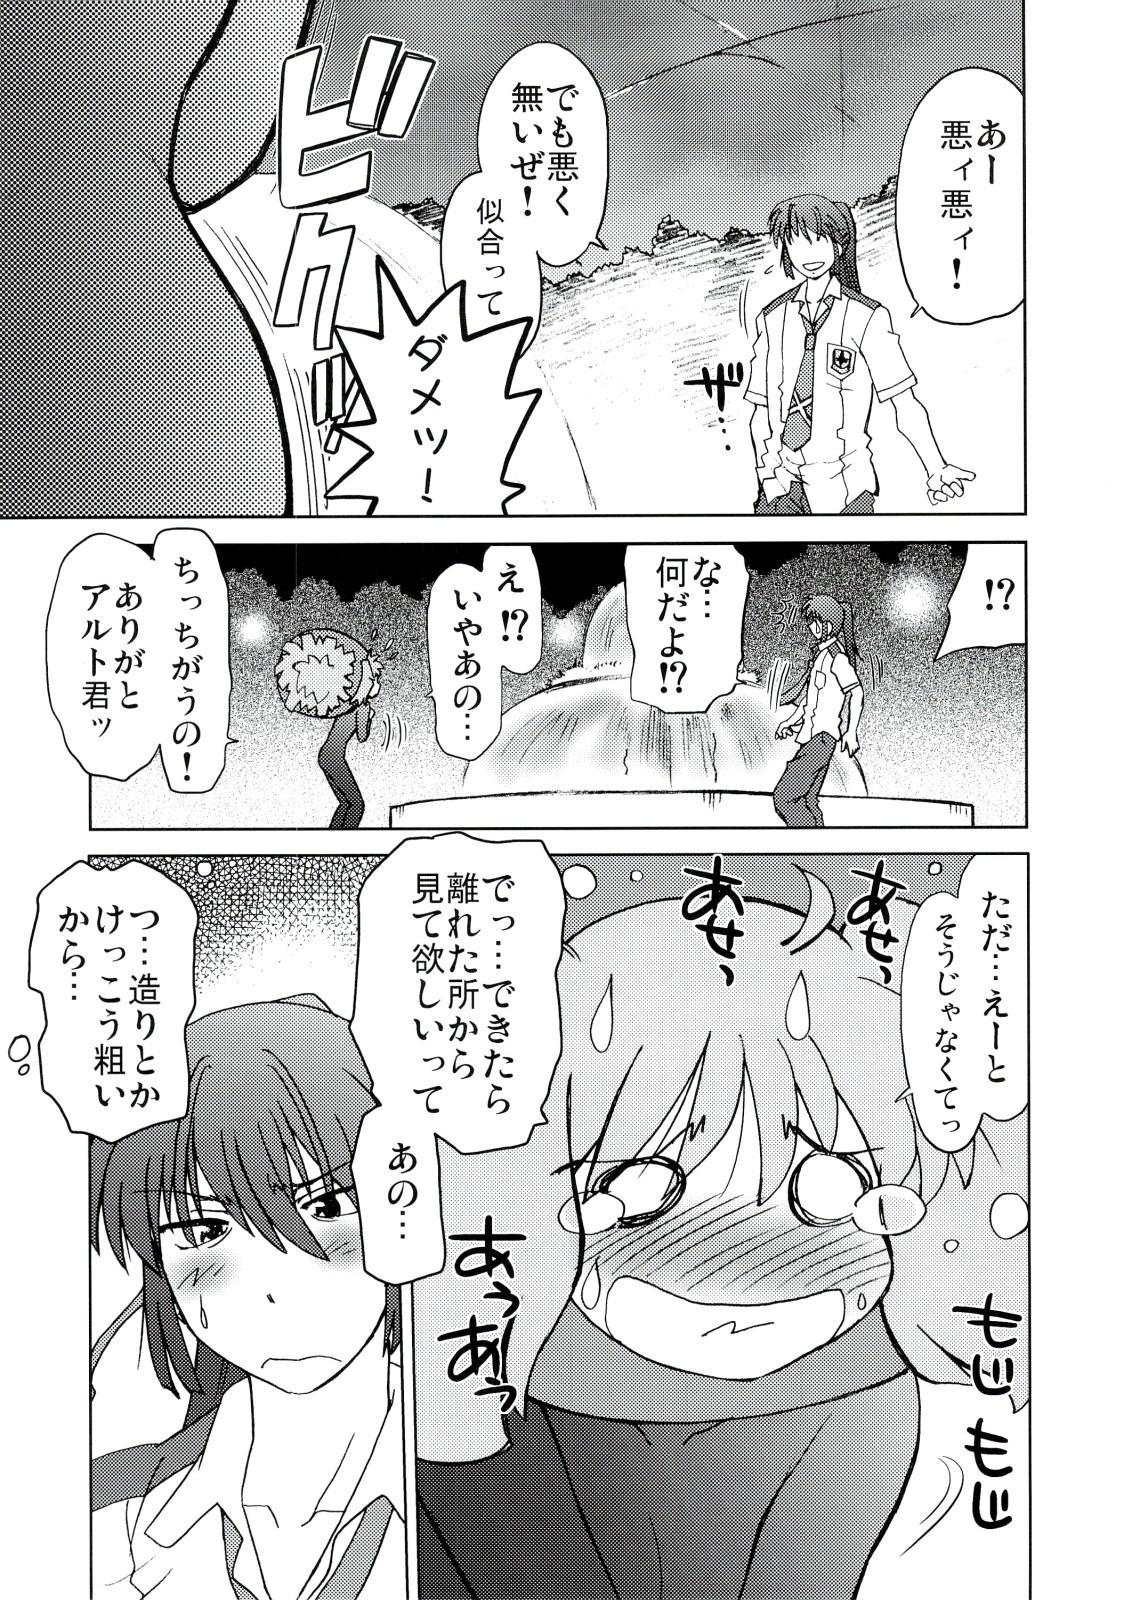 Bubblebutt Kishou Tenketsu 6 - Macross frontier Licking Pussy - Page 8